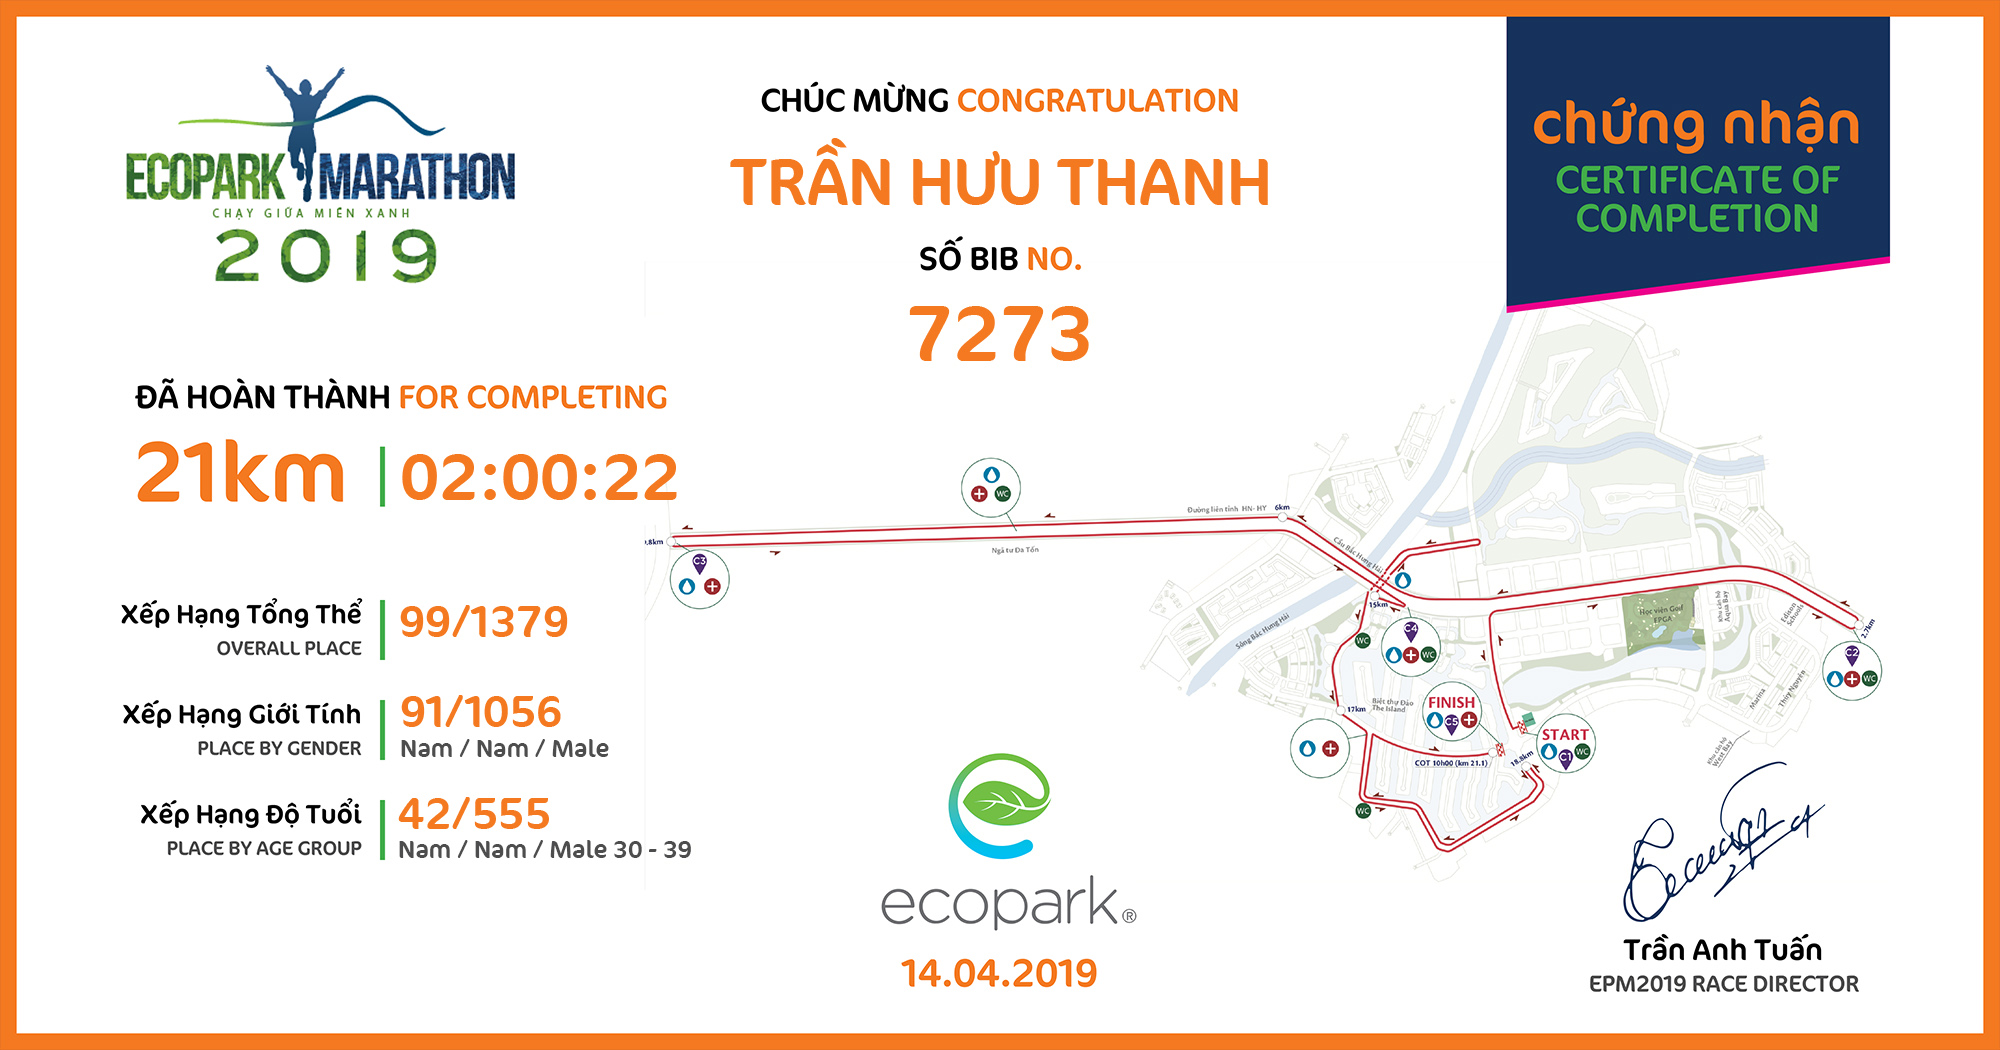 7273 - Trần Hưu Thanh